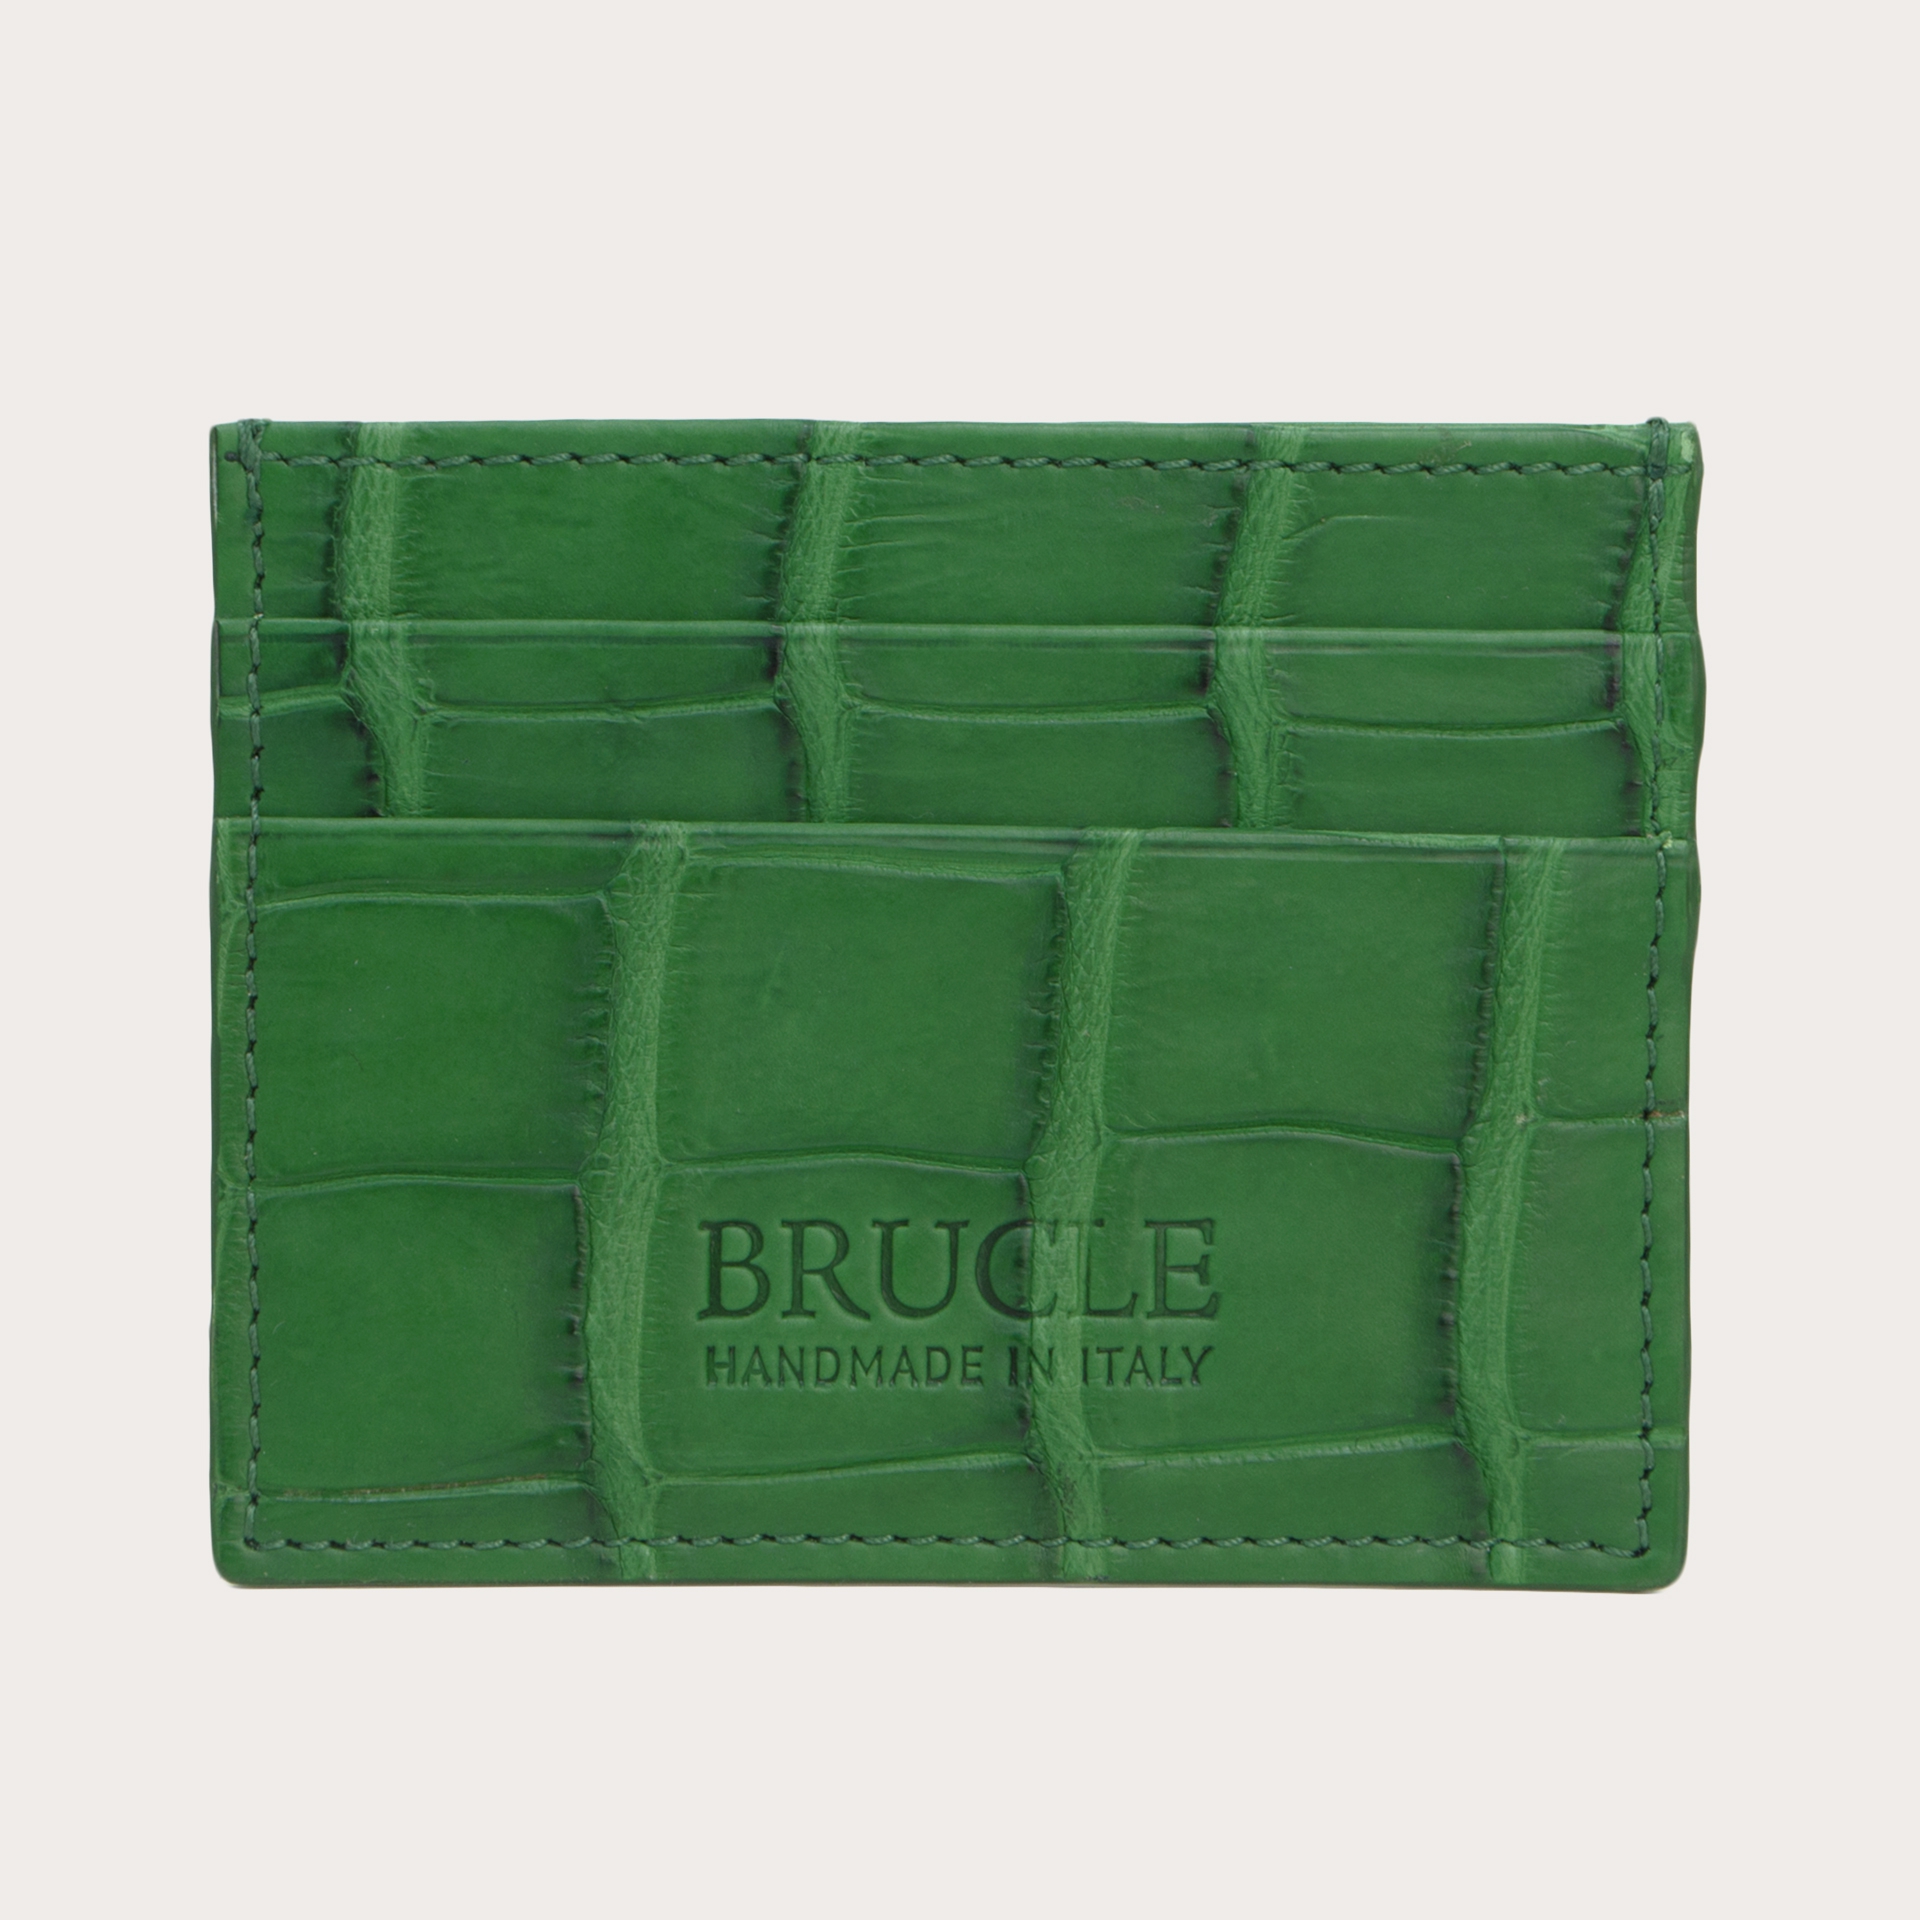 Brucle Kreditkartenetui alligator leder blau grün